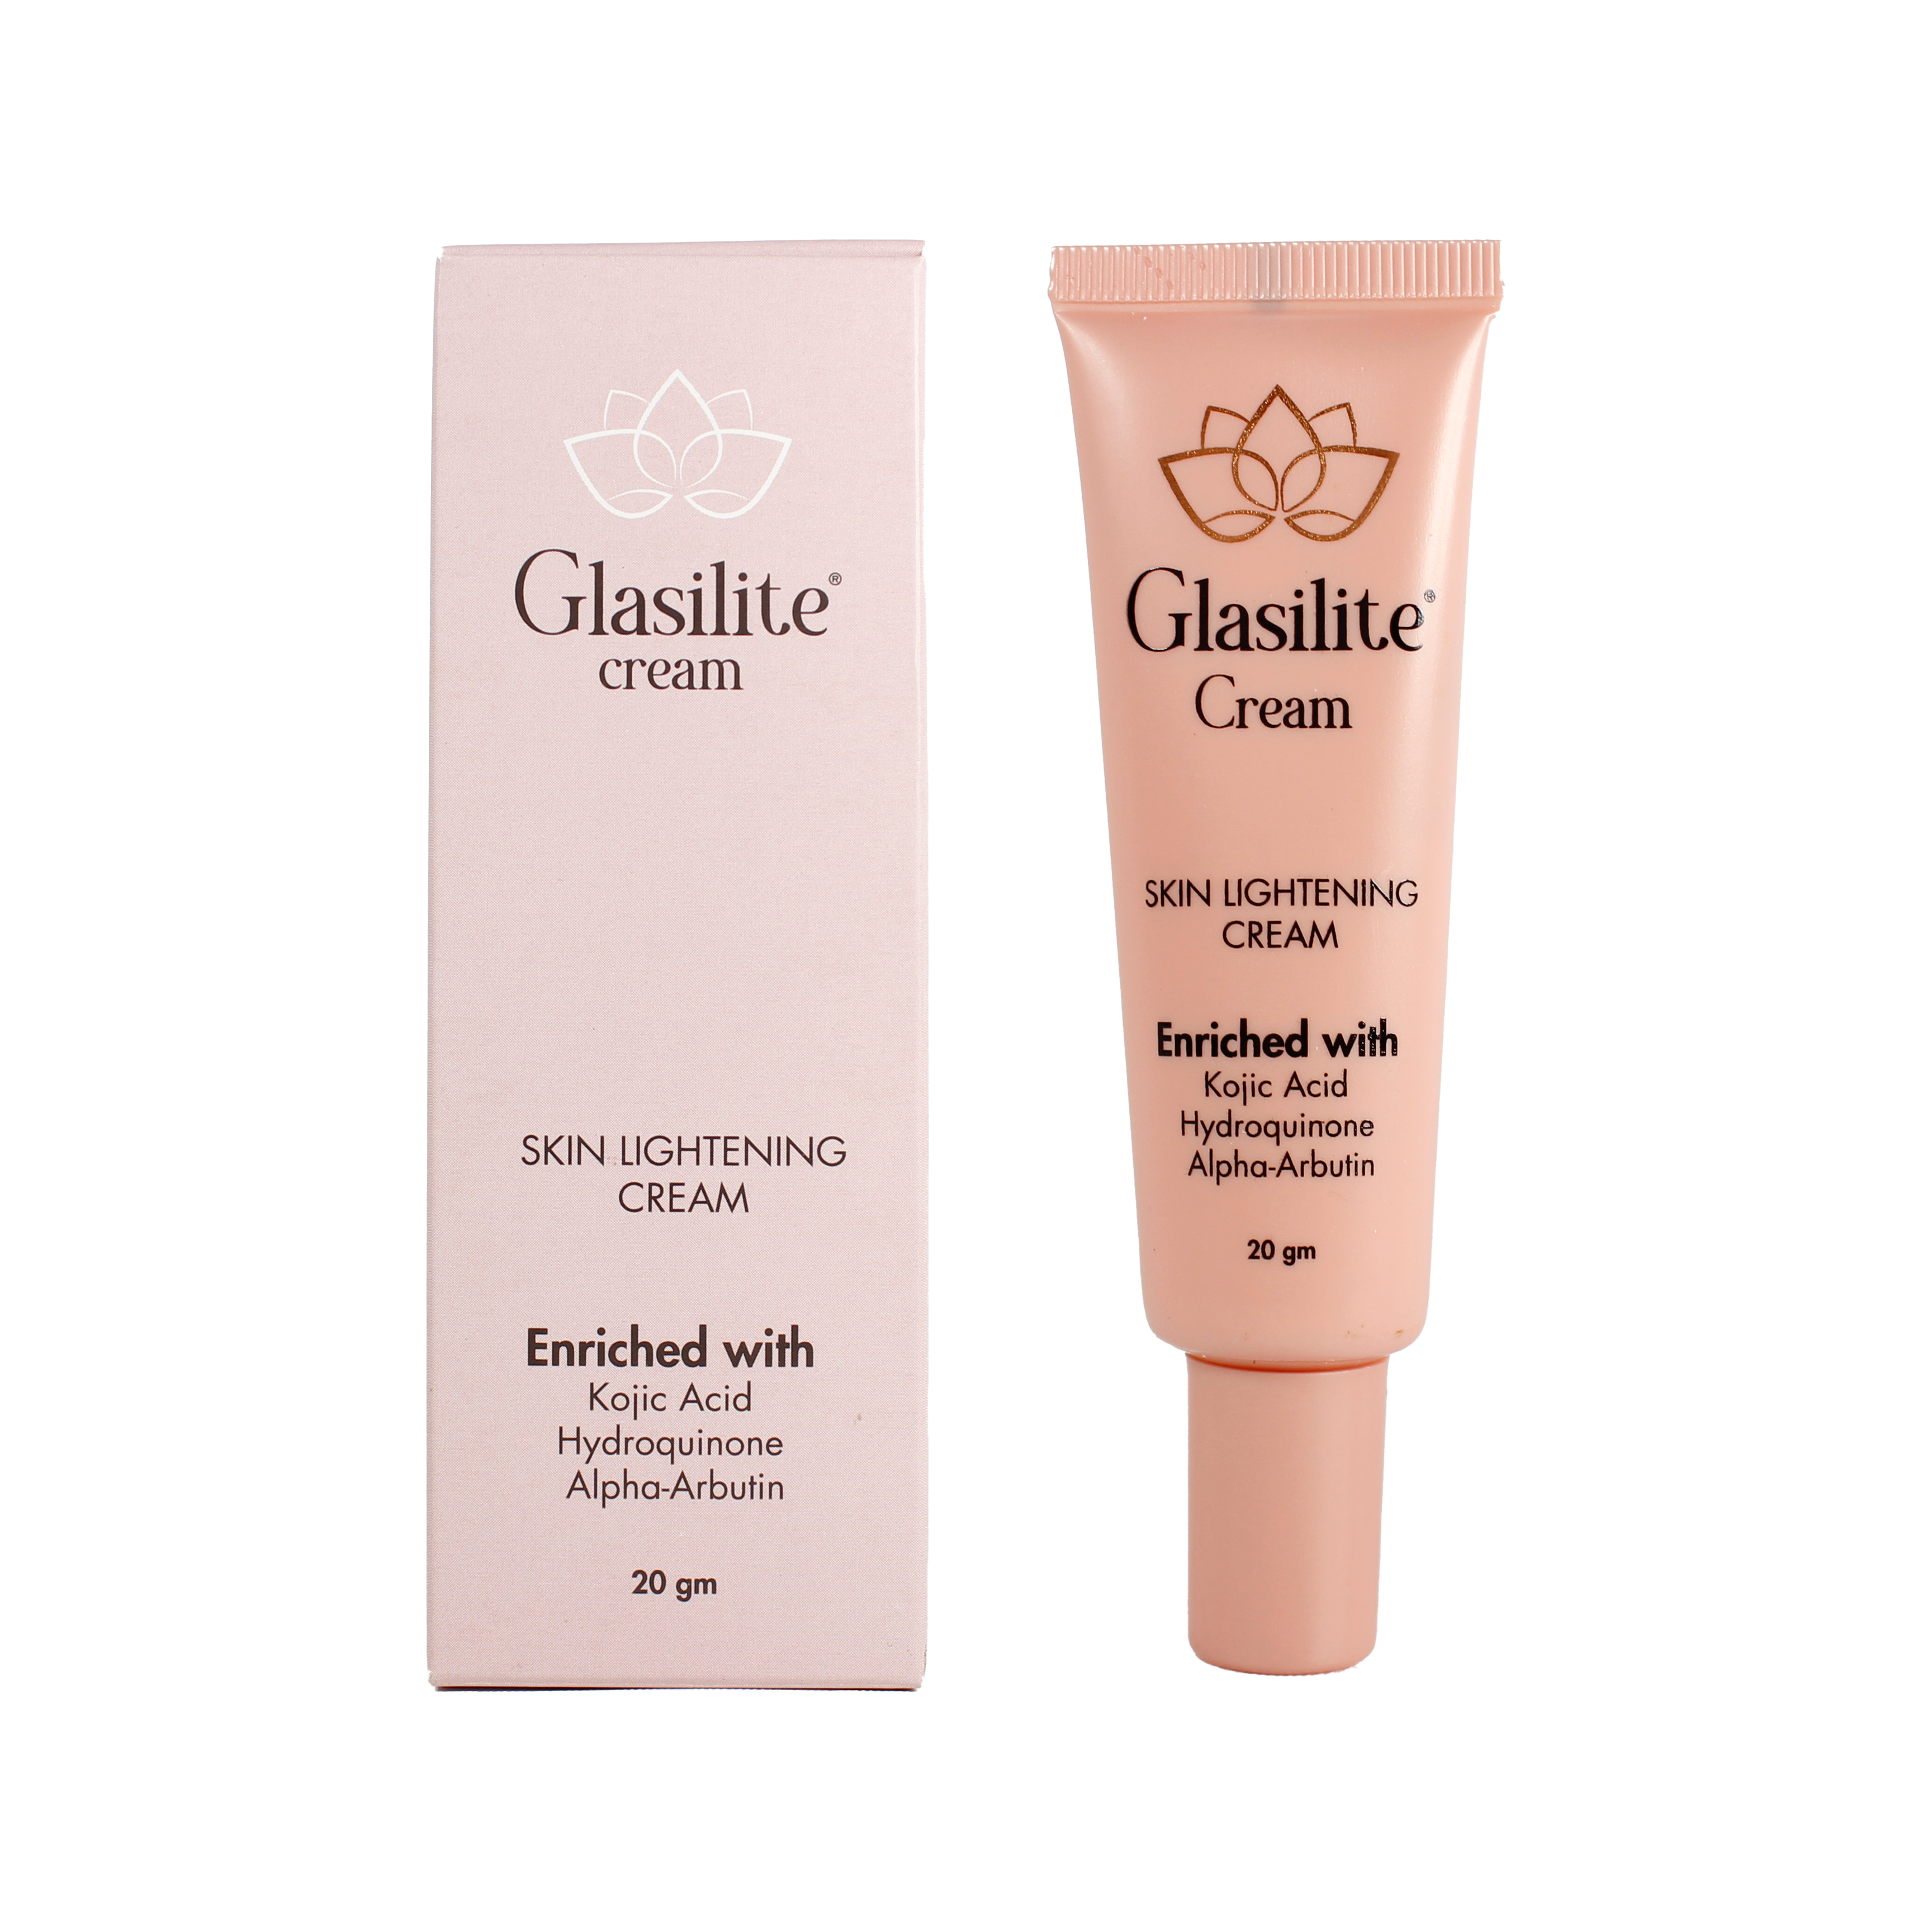 Glasilite Cream Manufacturer & Wholesaler Supplier